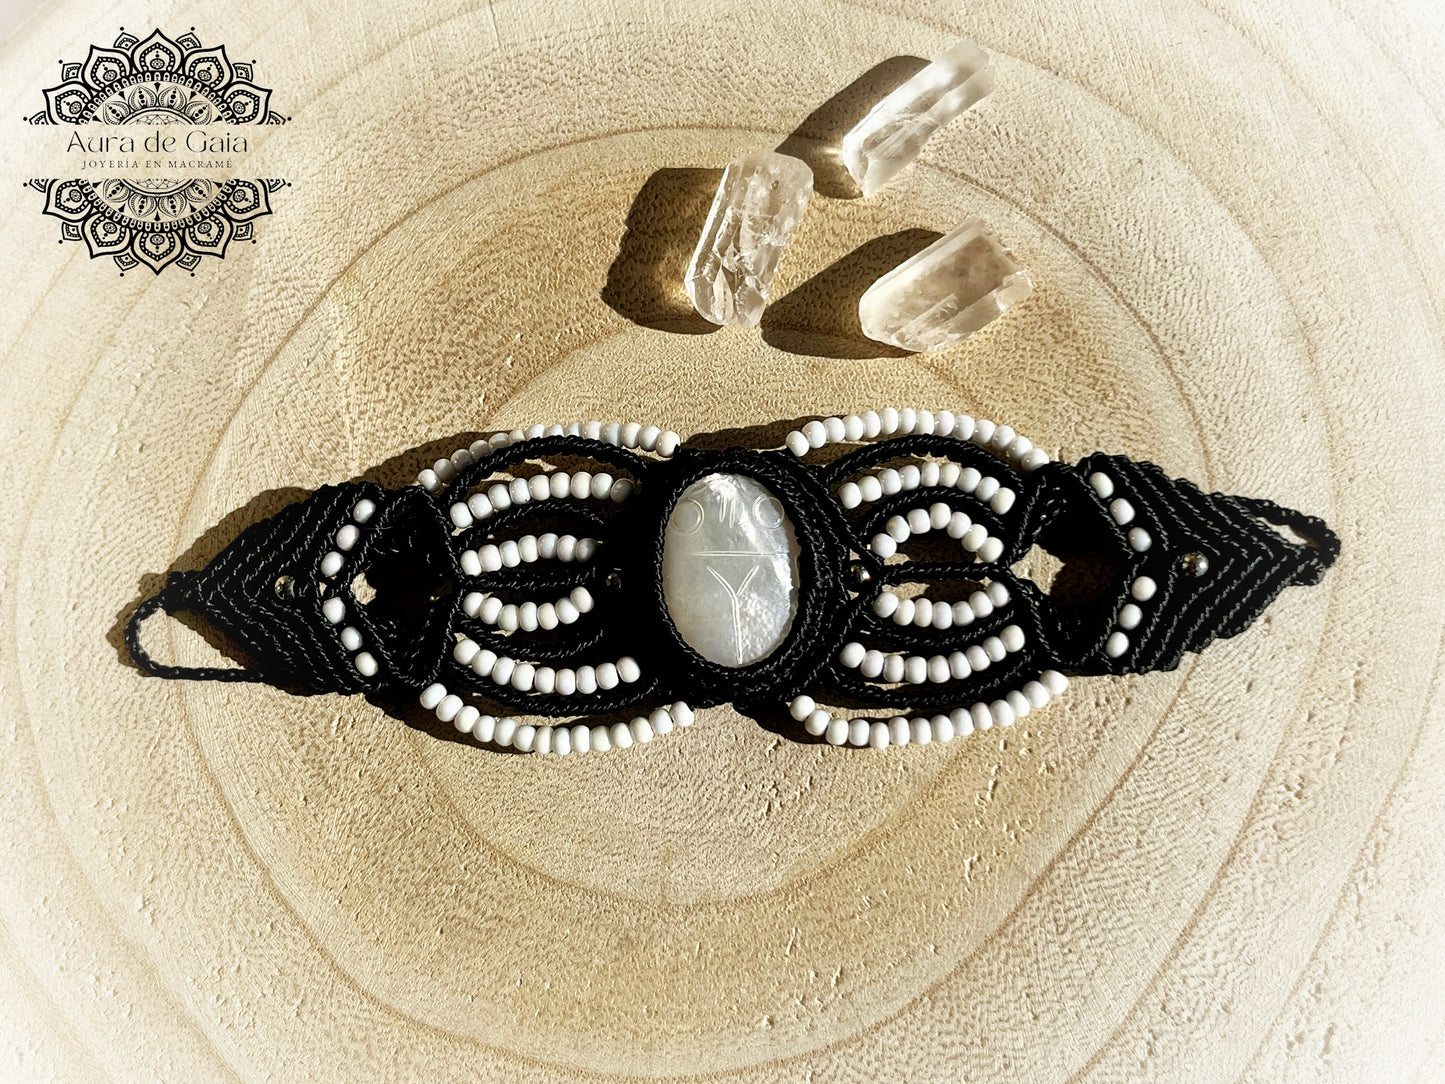 Pulsera de macrame con Amuleto Escarabajo en Madre Perla - Macrame Bracelet with Beetle Charm in Mother of Pearl